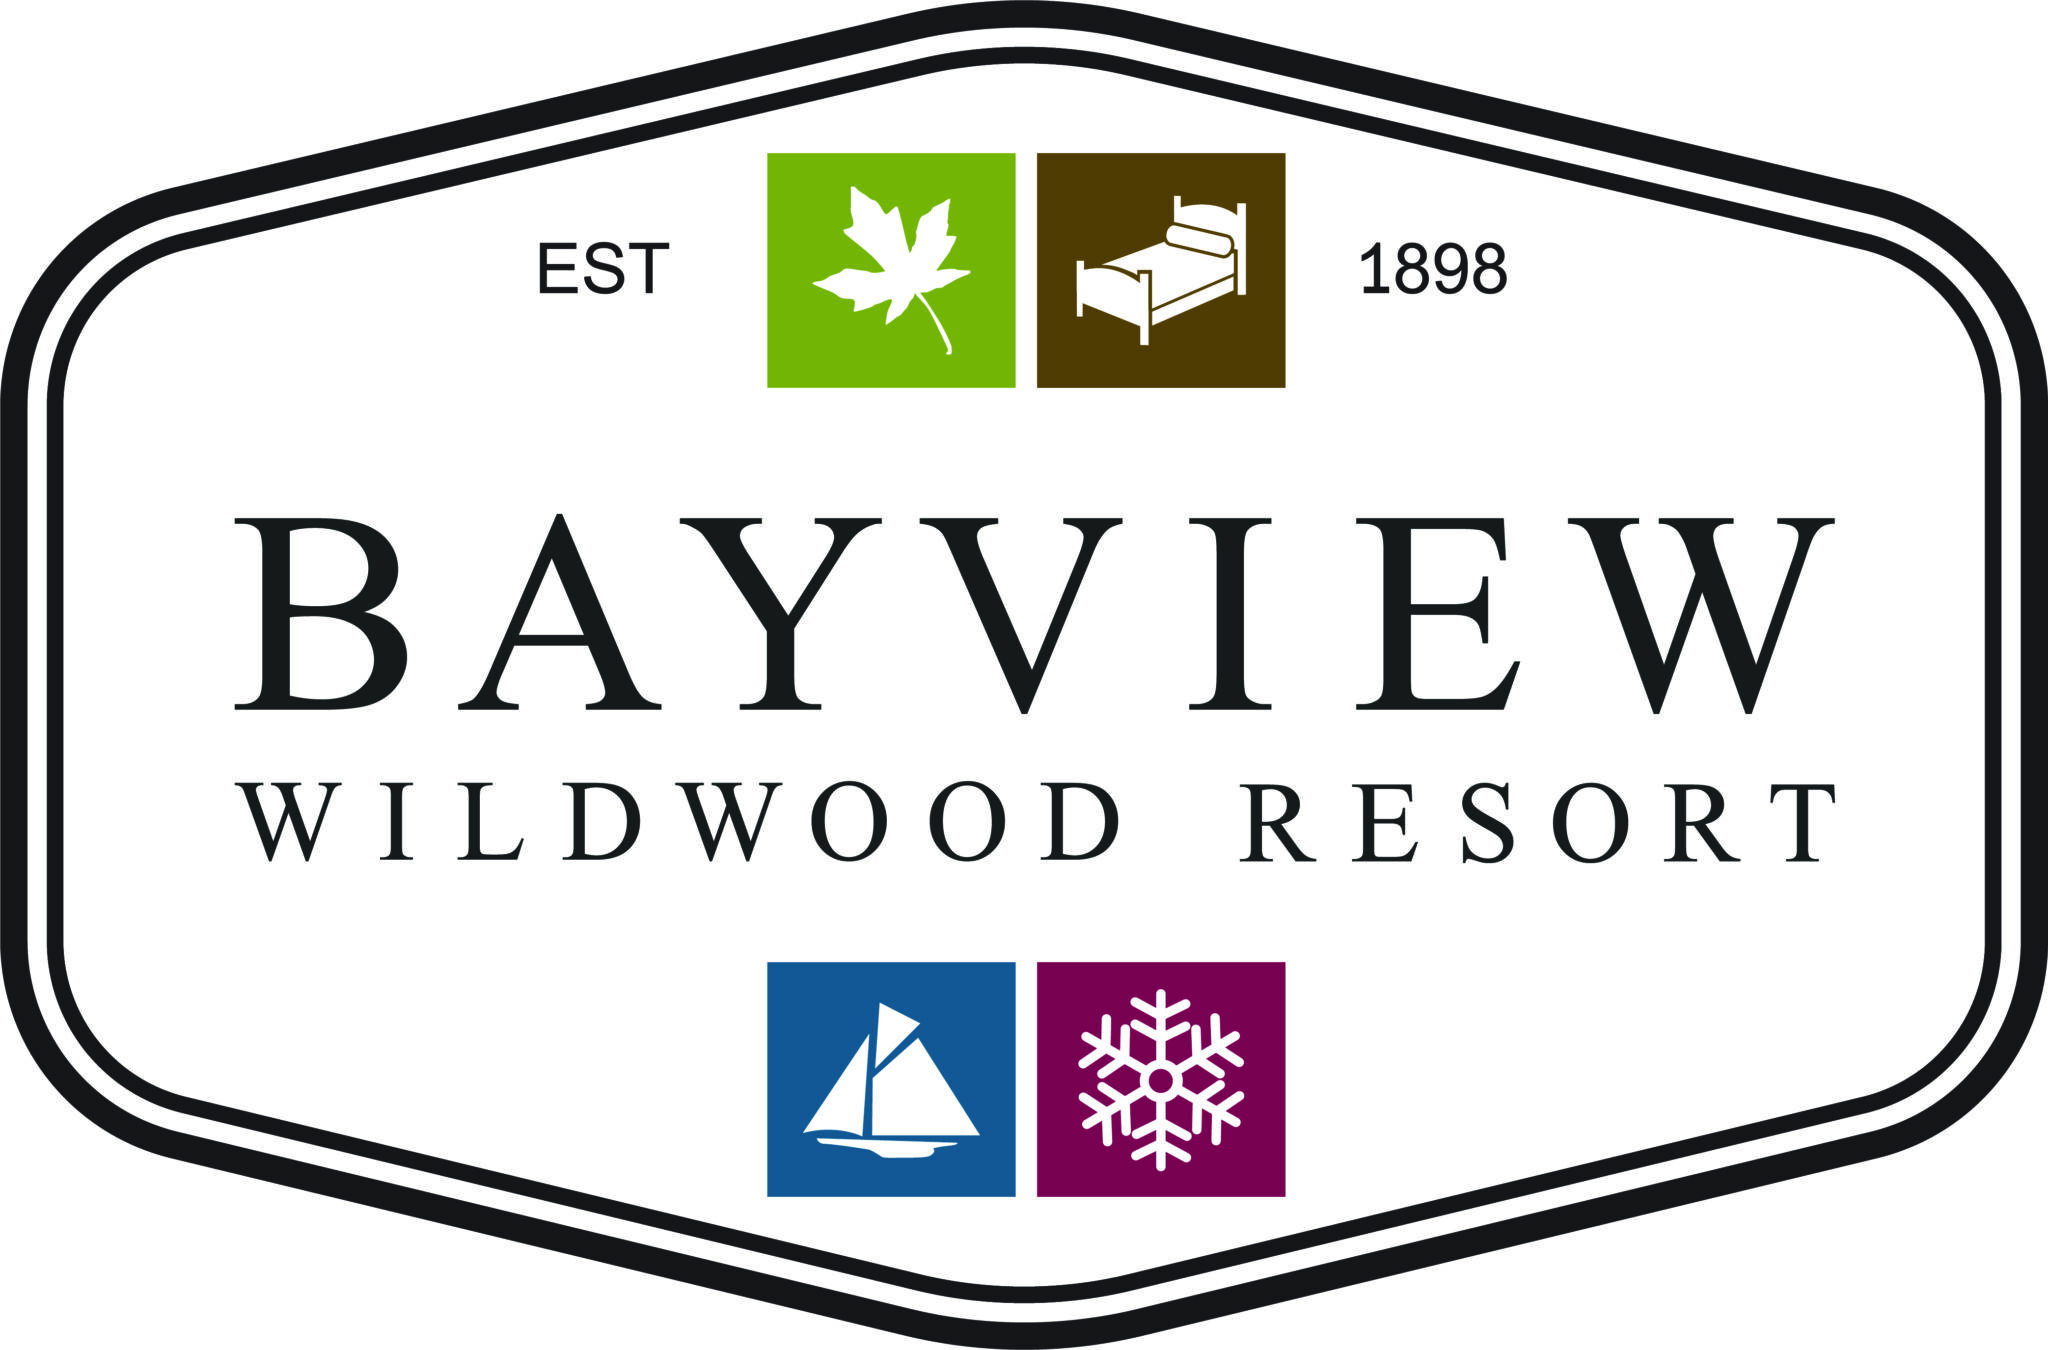 BAYVIEW WILDWOOD RESORT